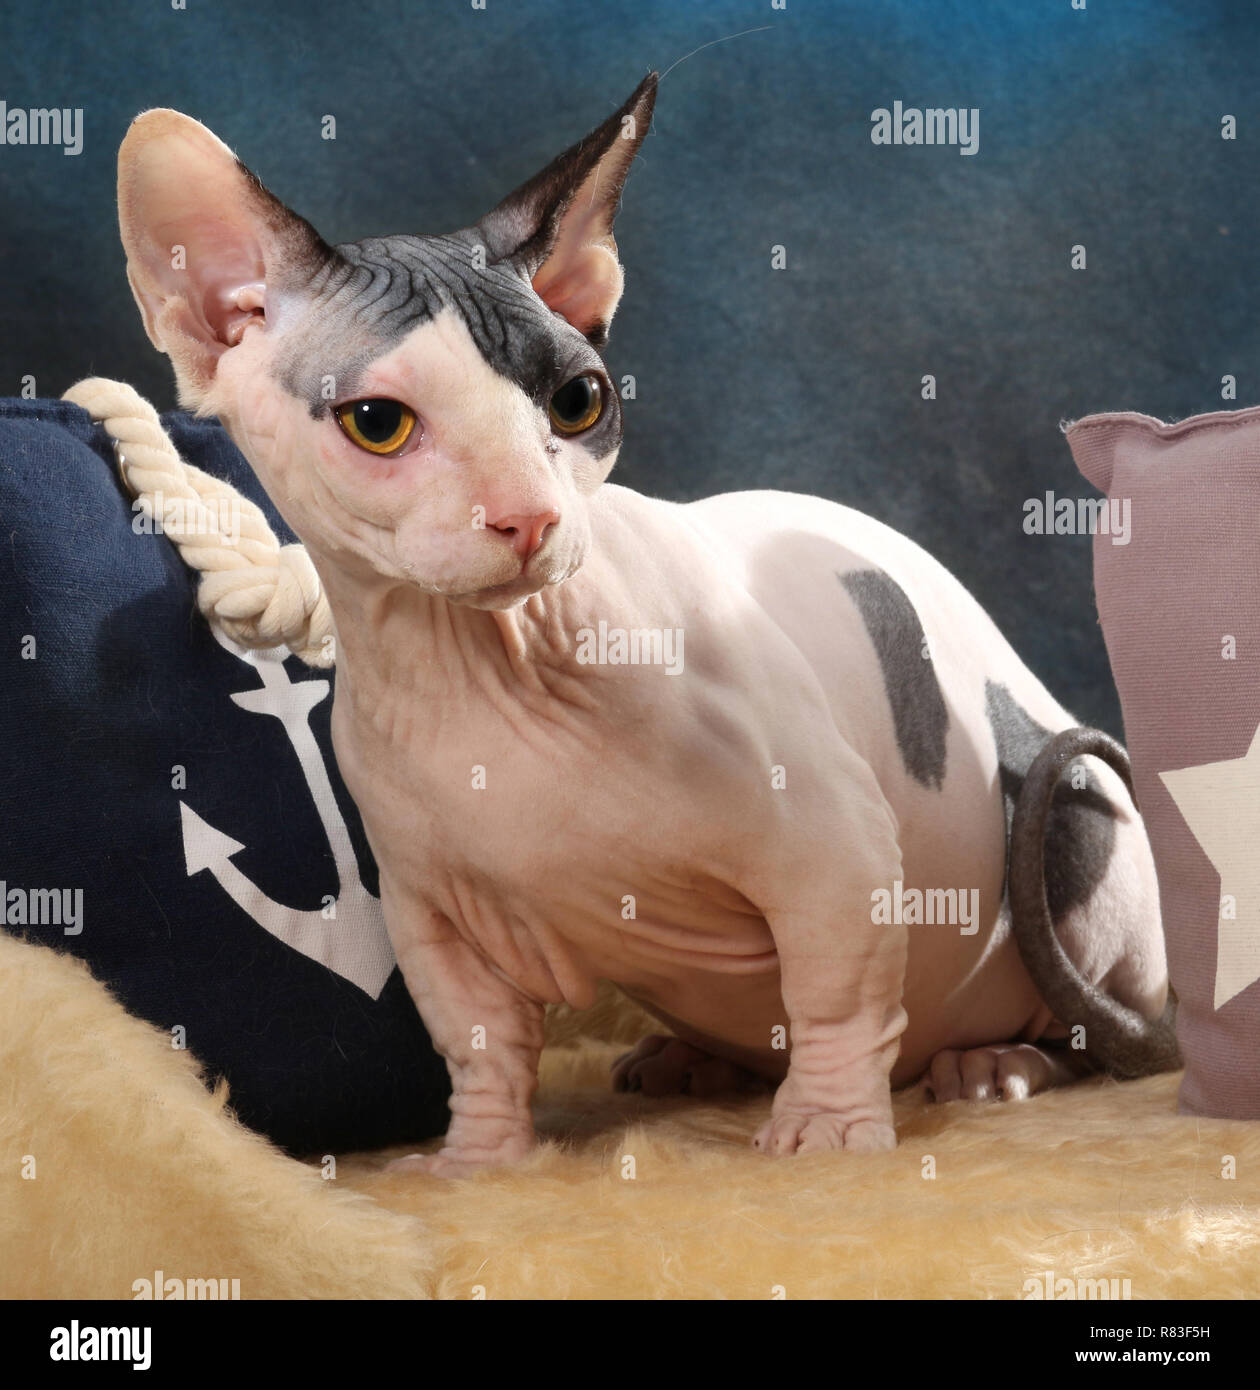 Chat sphinx, bambino, un chat avec des pattes courtes, assis sur un coussin Banque D'Images